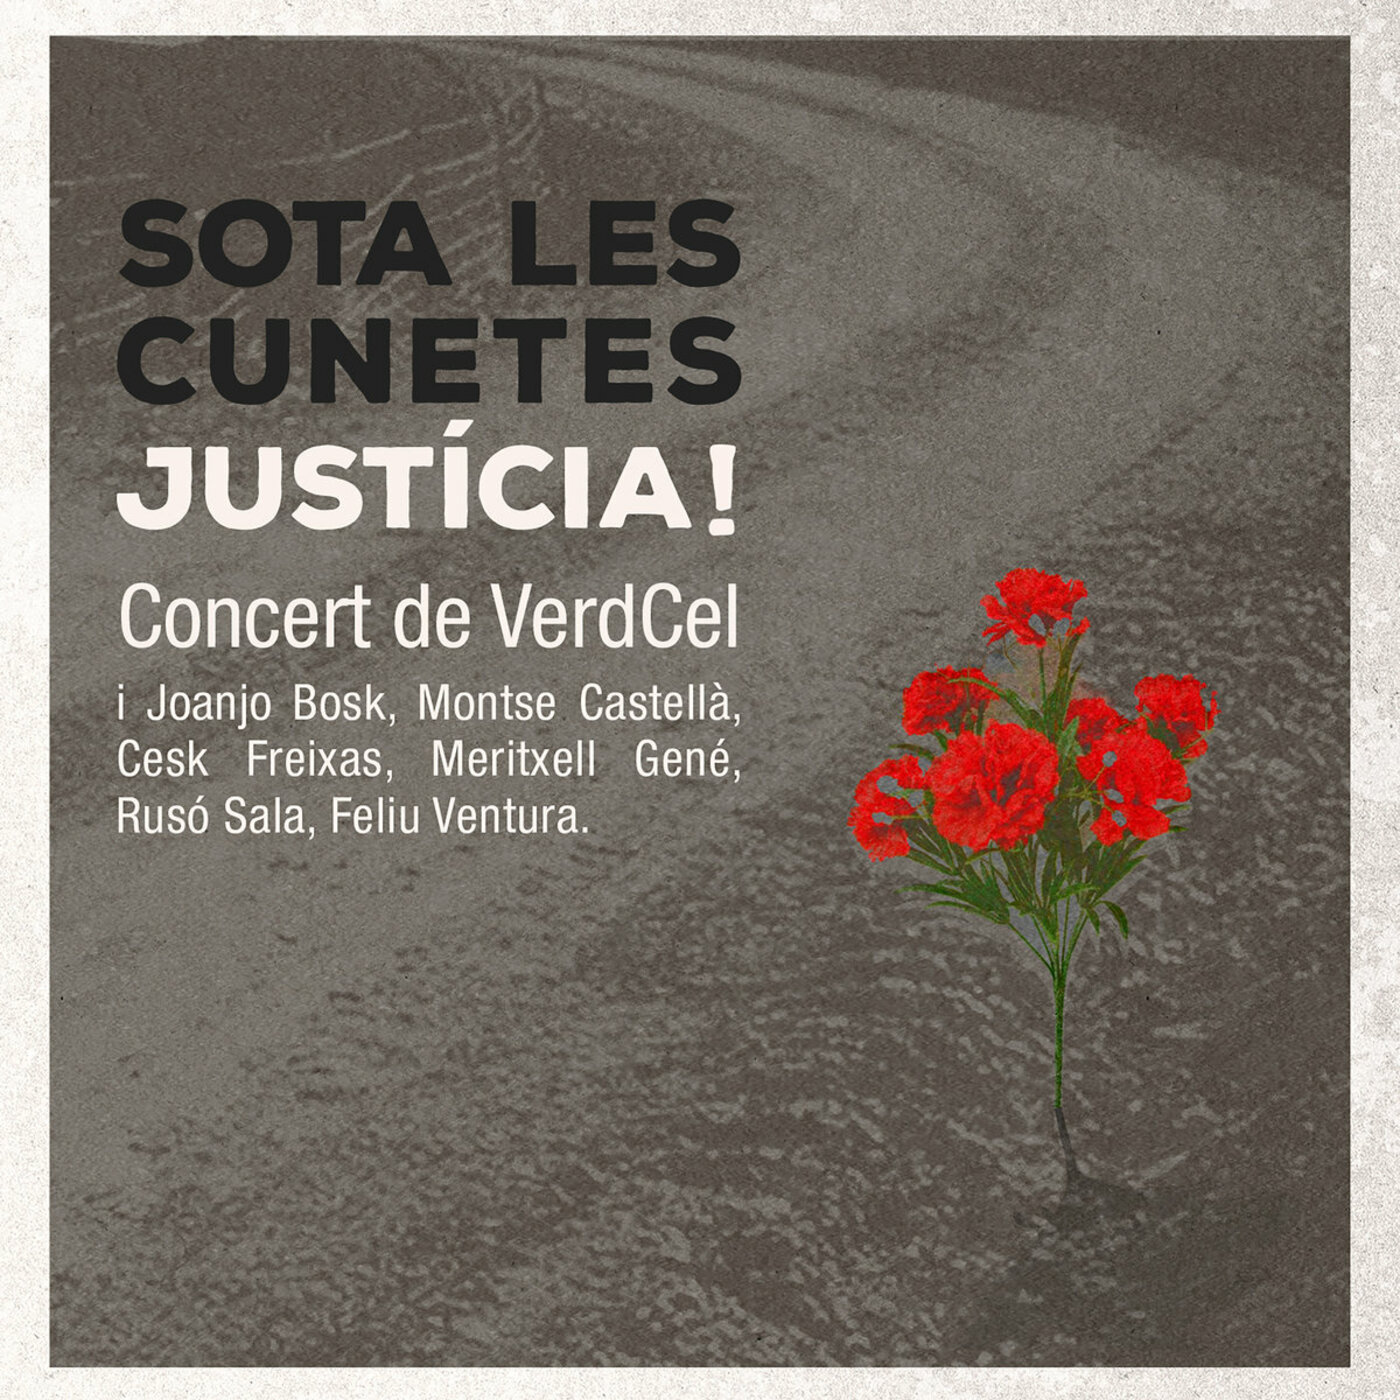 Verdcel - Sota les cunetes. Justícia! | musica en valencià